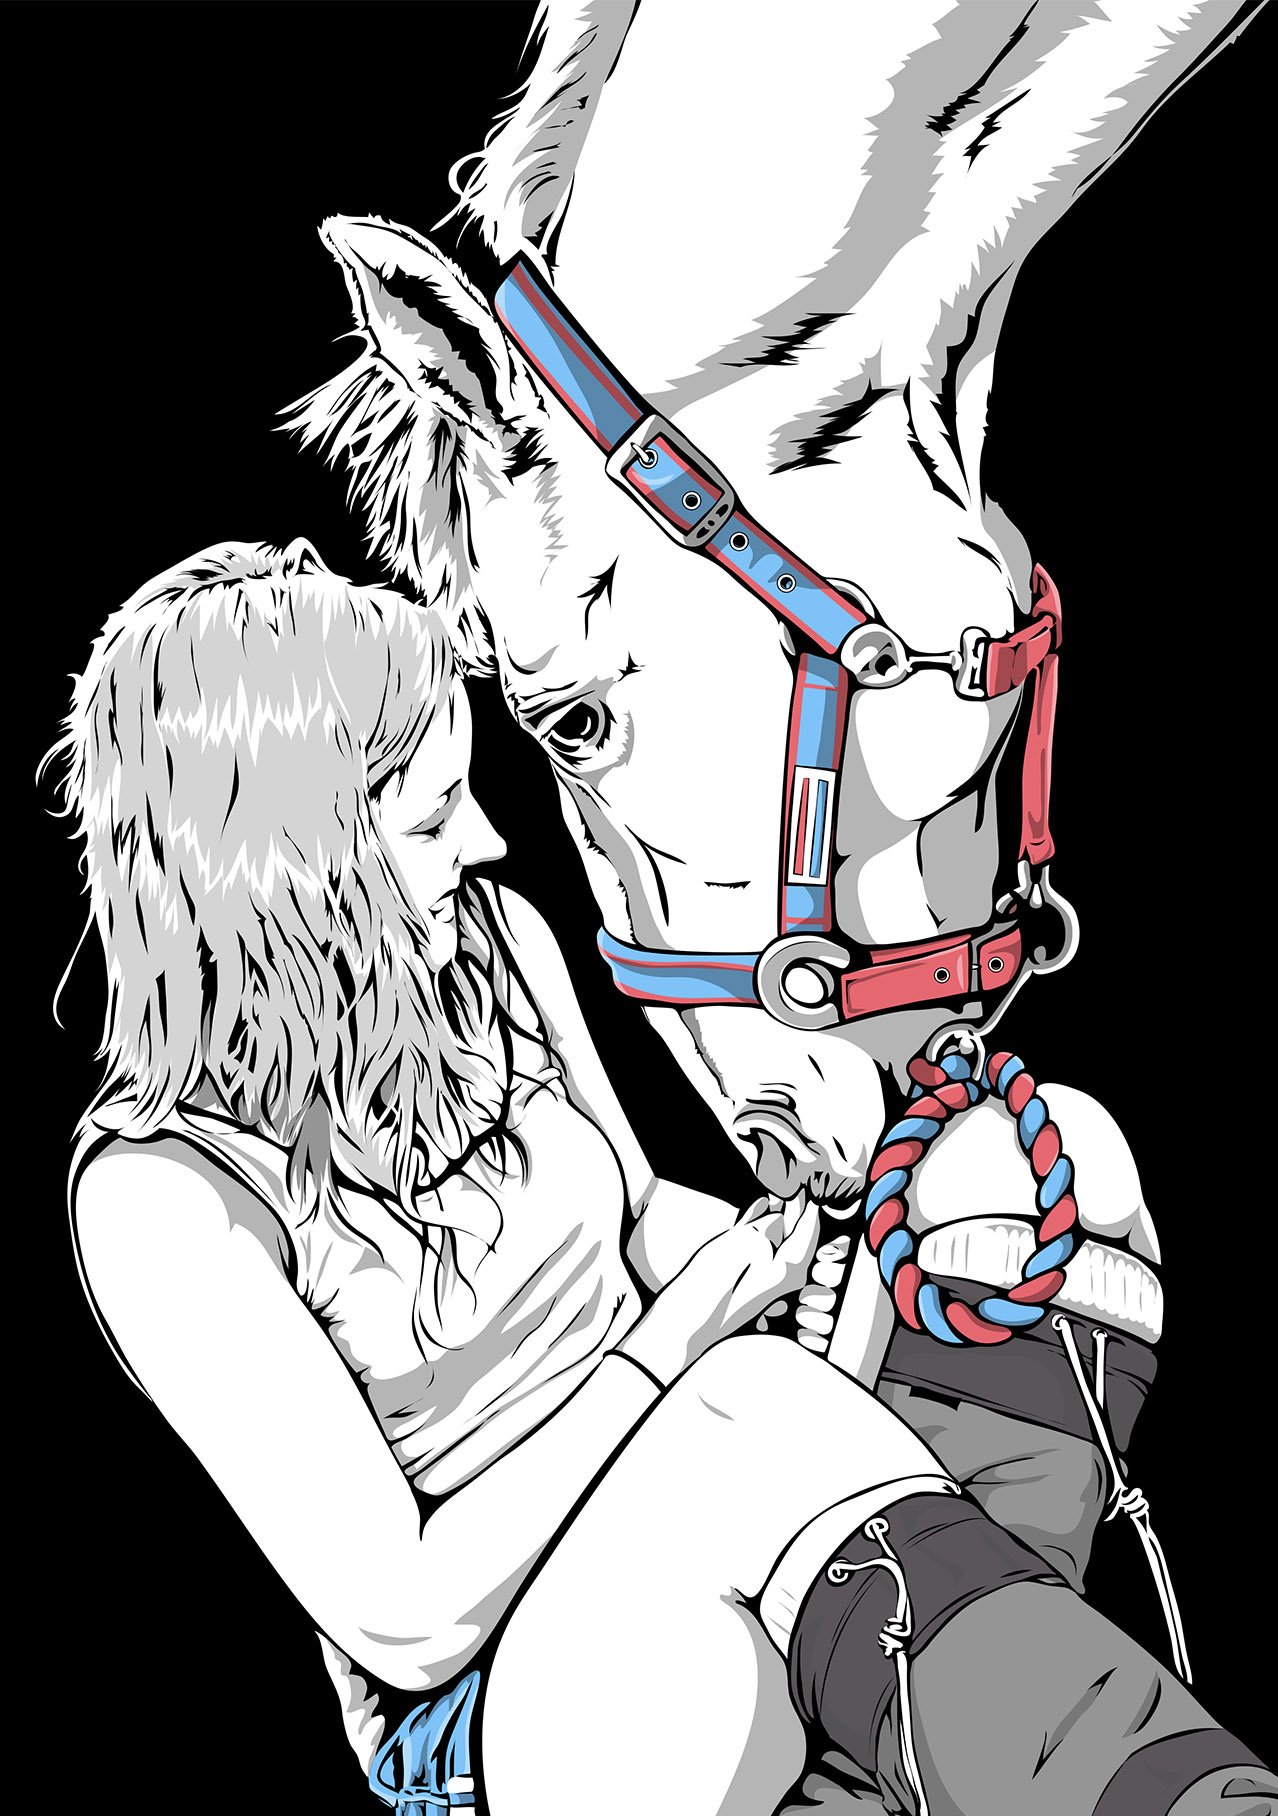 Illustration Girl & The Horse